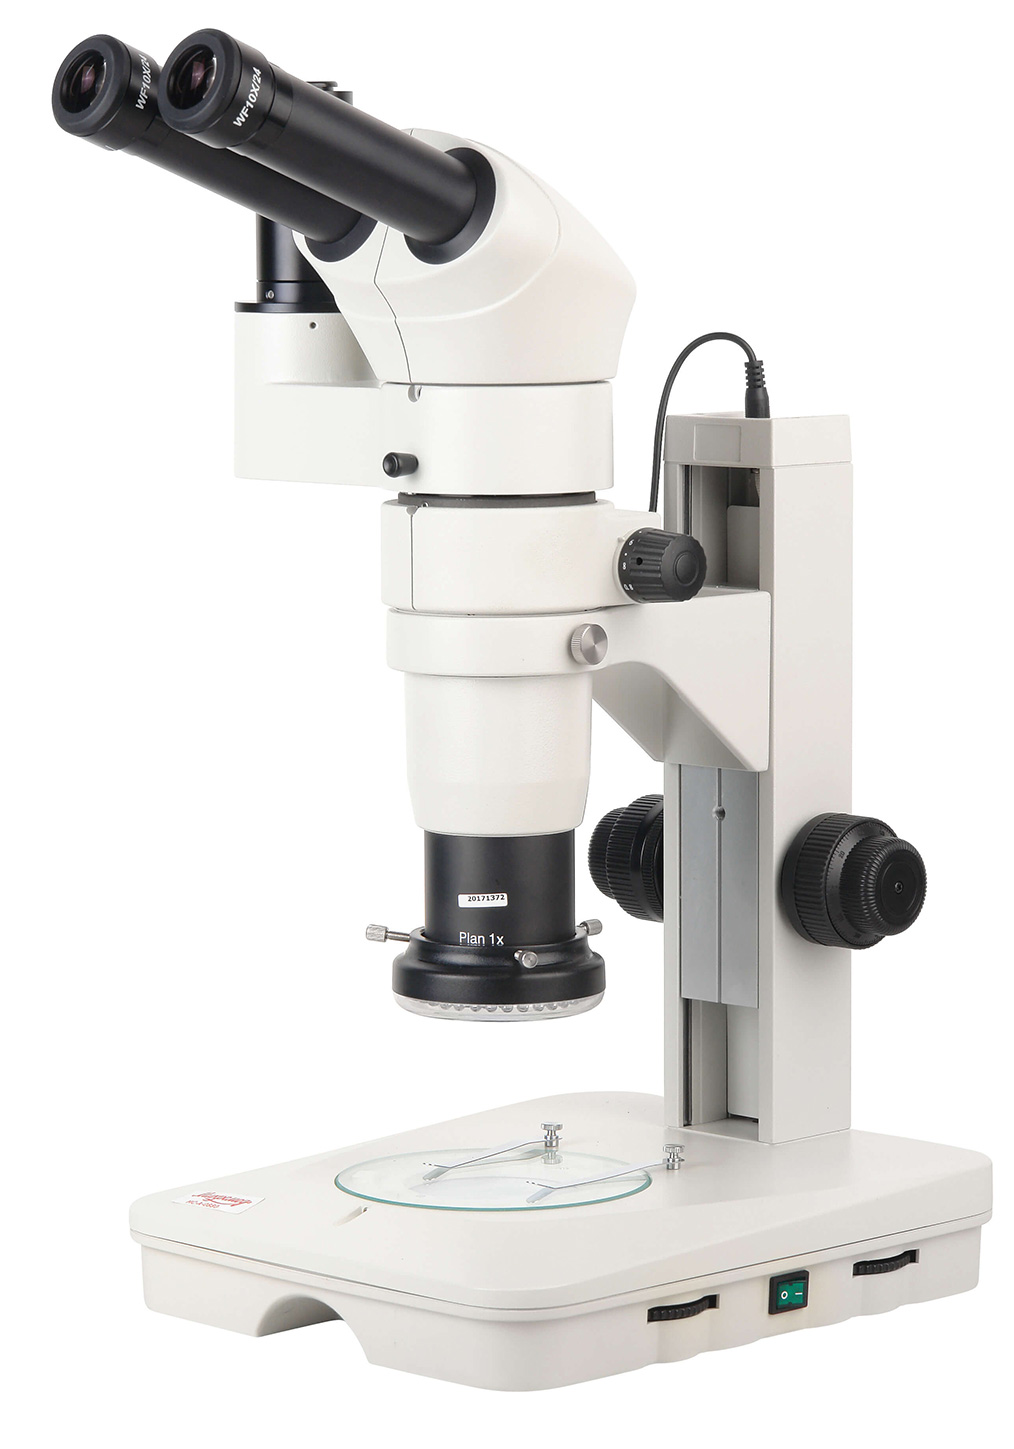 Микроскоп стереоскопический Микромед MC-А-0880